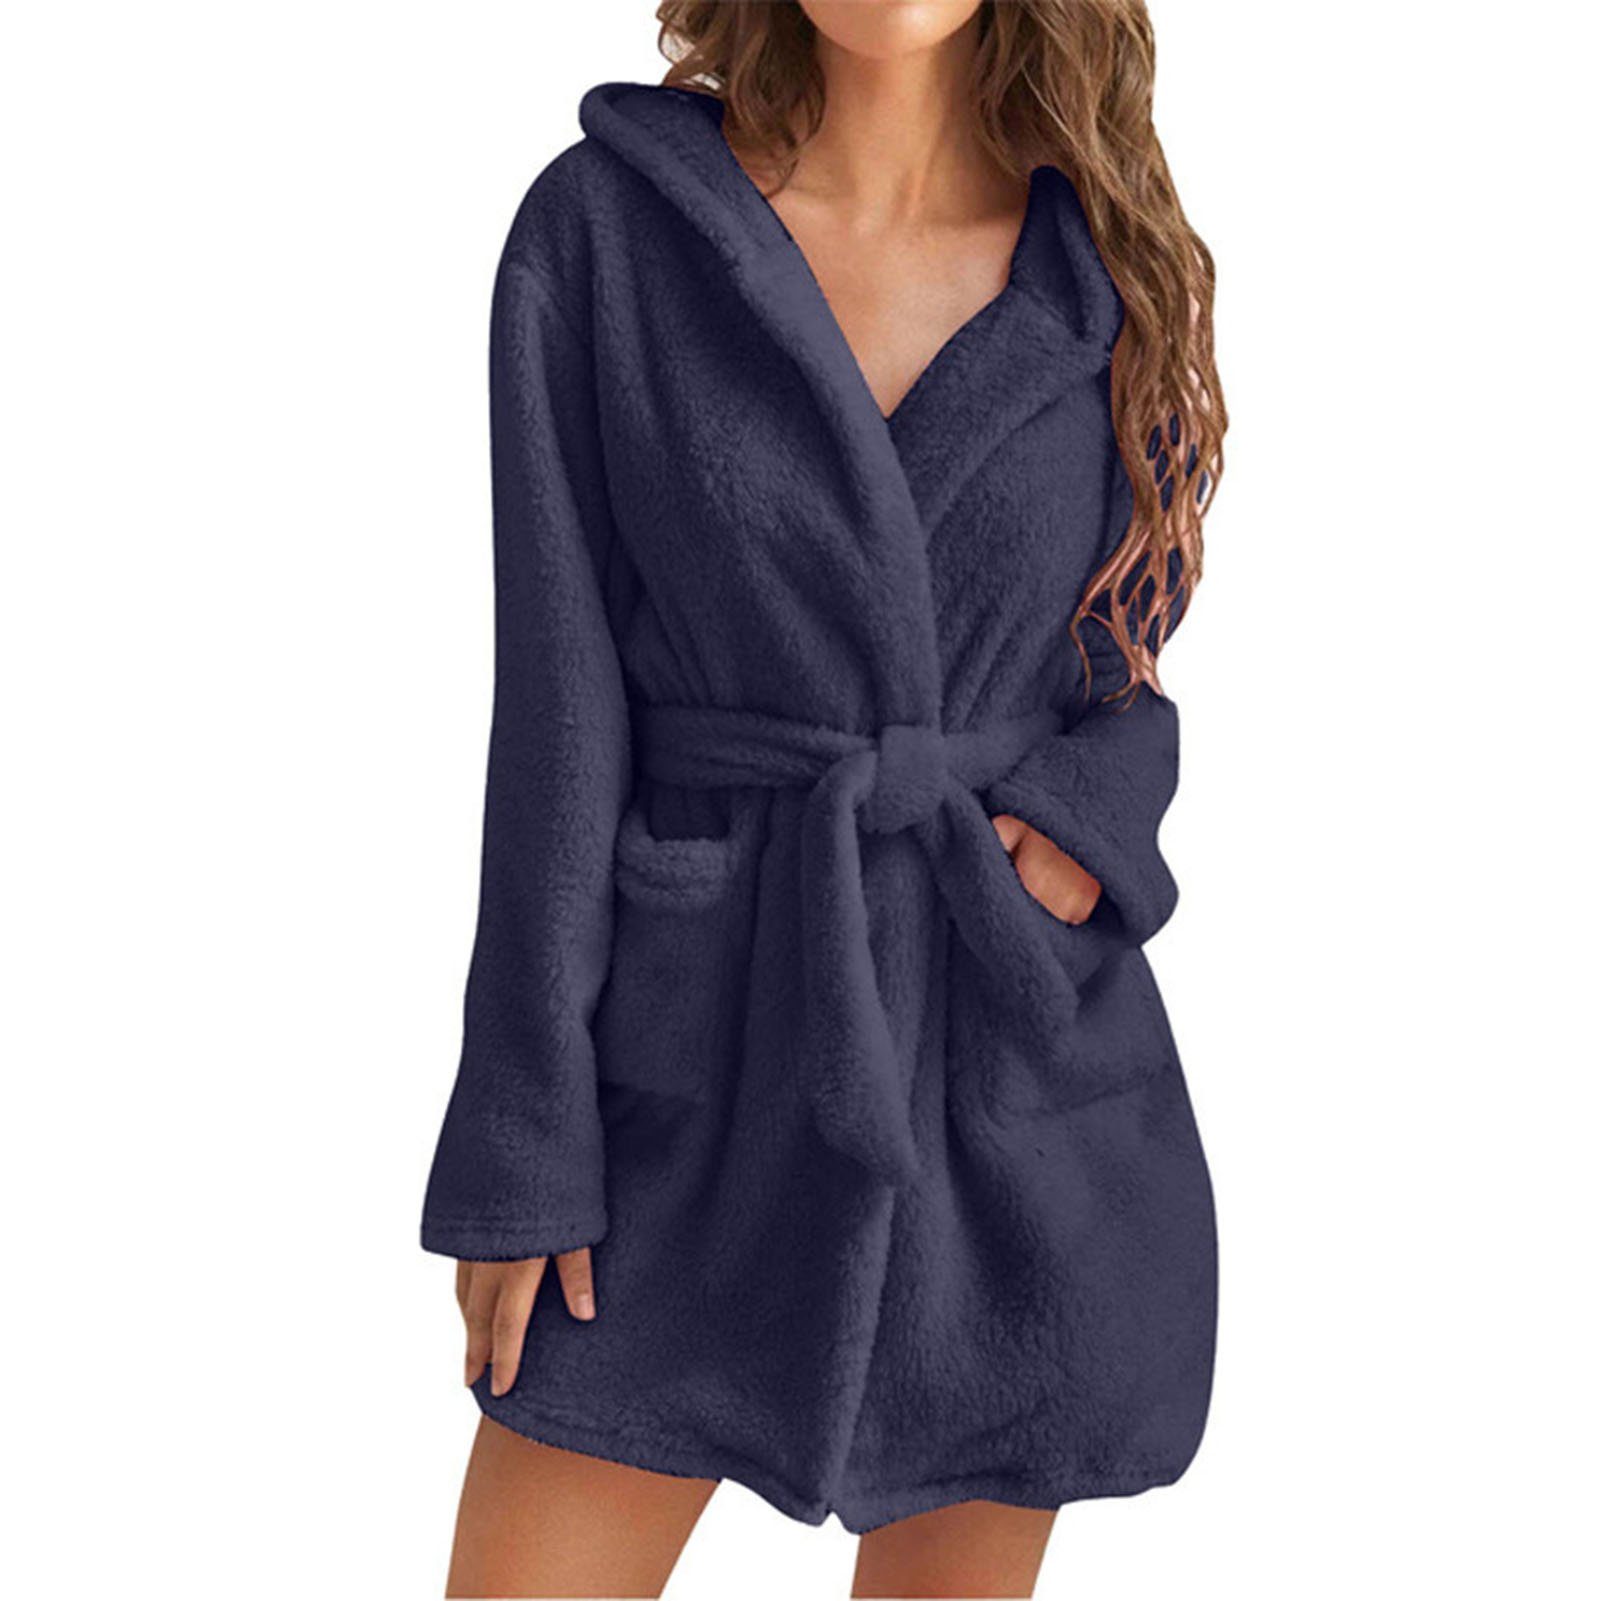 Damen-Handtuch-Bademantel Damenbademantel Taschen, Blusmart Bequem, Für blue 2 Mit Atmungsaktiv,